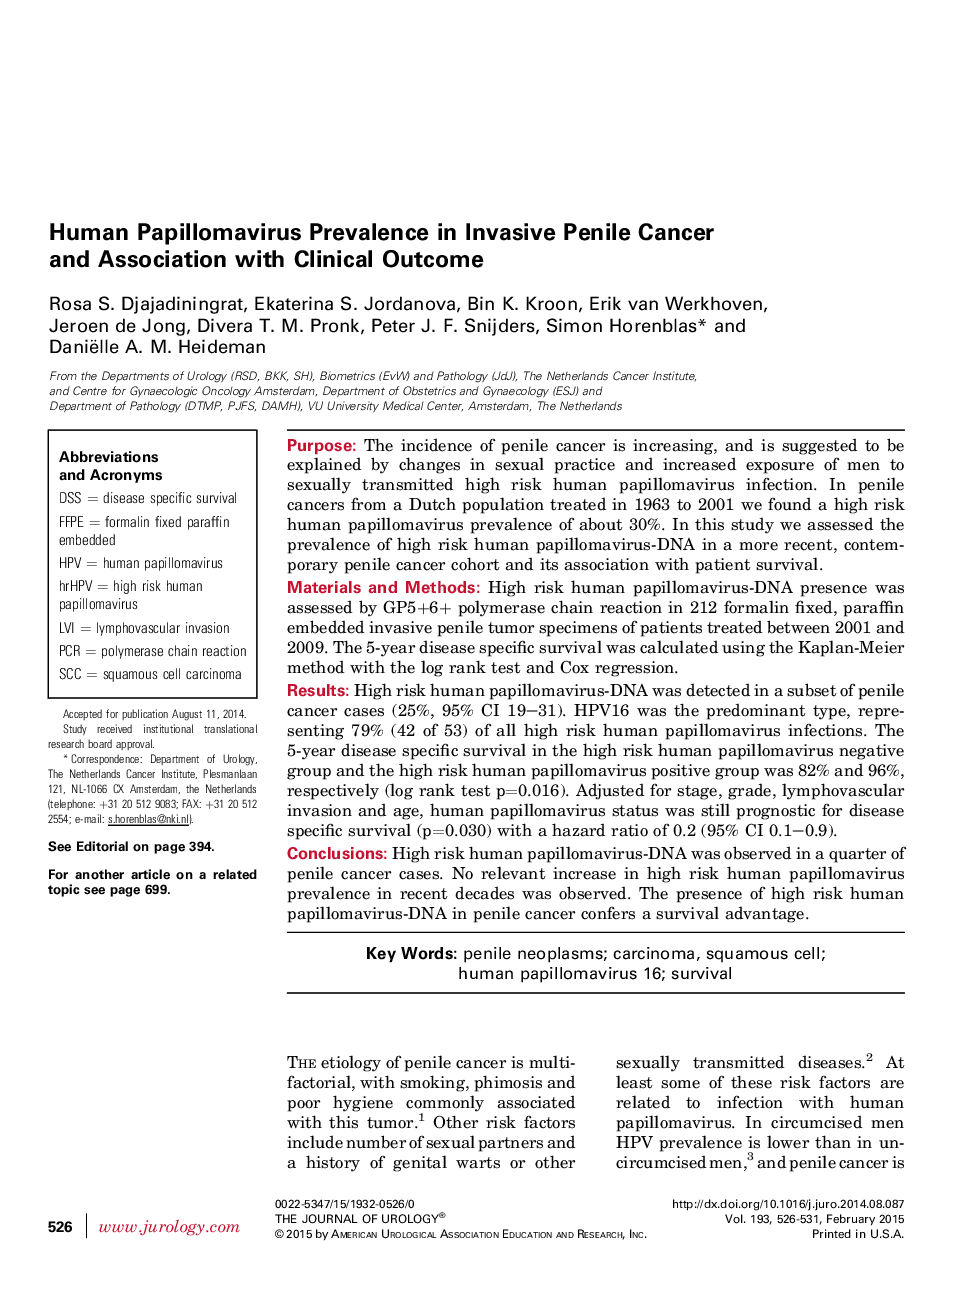 شیوع ویروس پاپیلومای انسانی در سرطان پنومونی تحریک پذیر و ارتباط با نتایج بالینی 